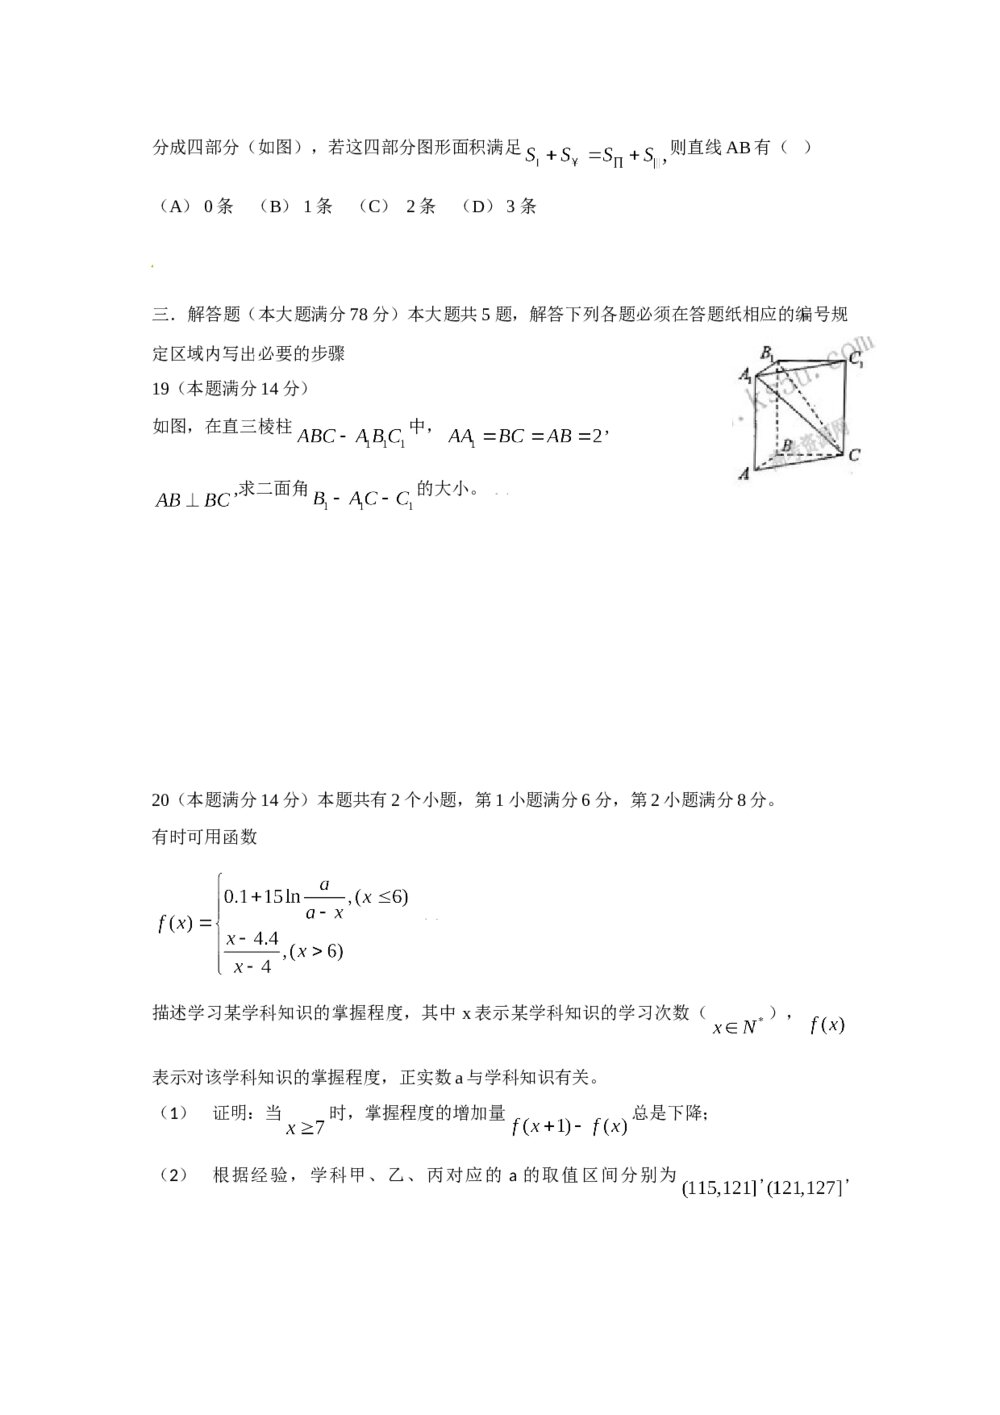 2009年上海高考数学试卷(理科)+(答案解析)4